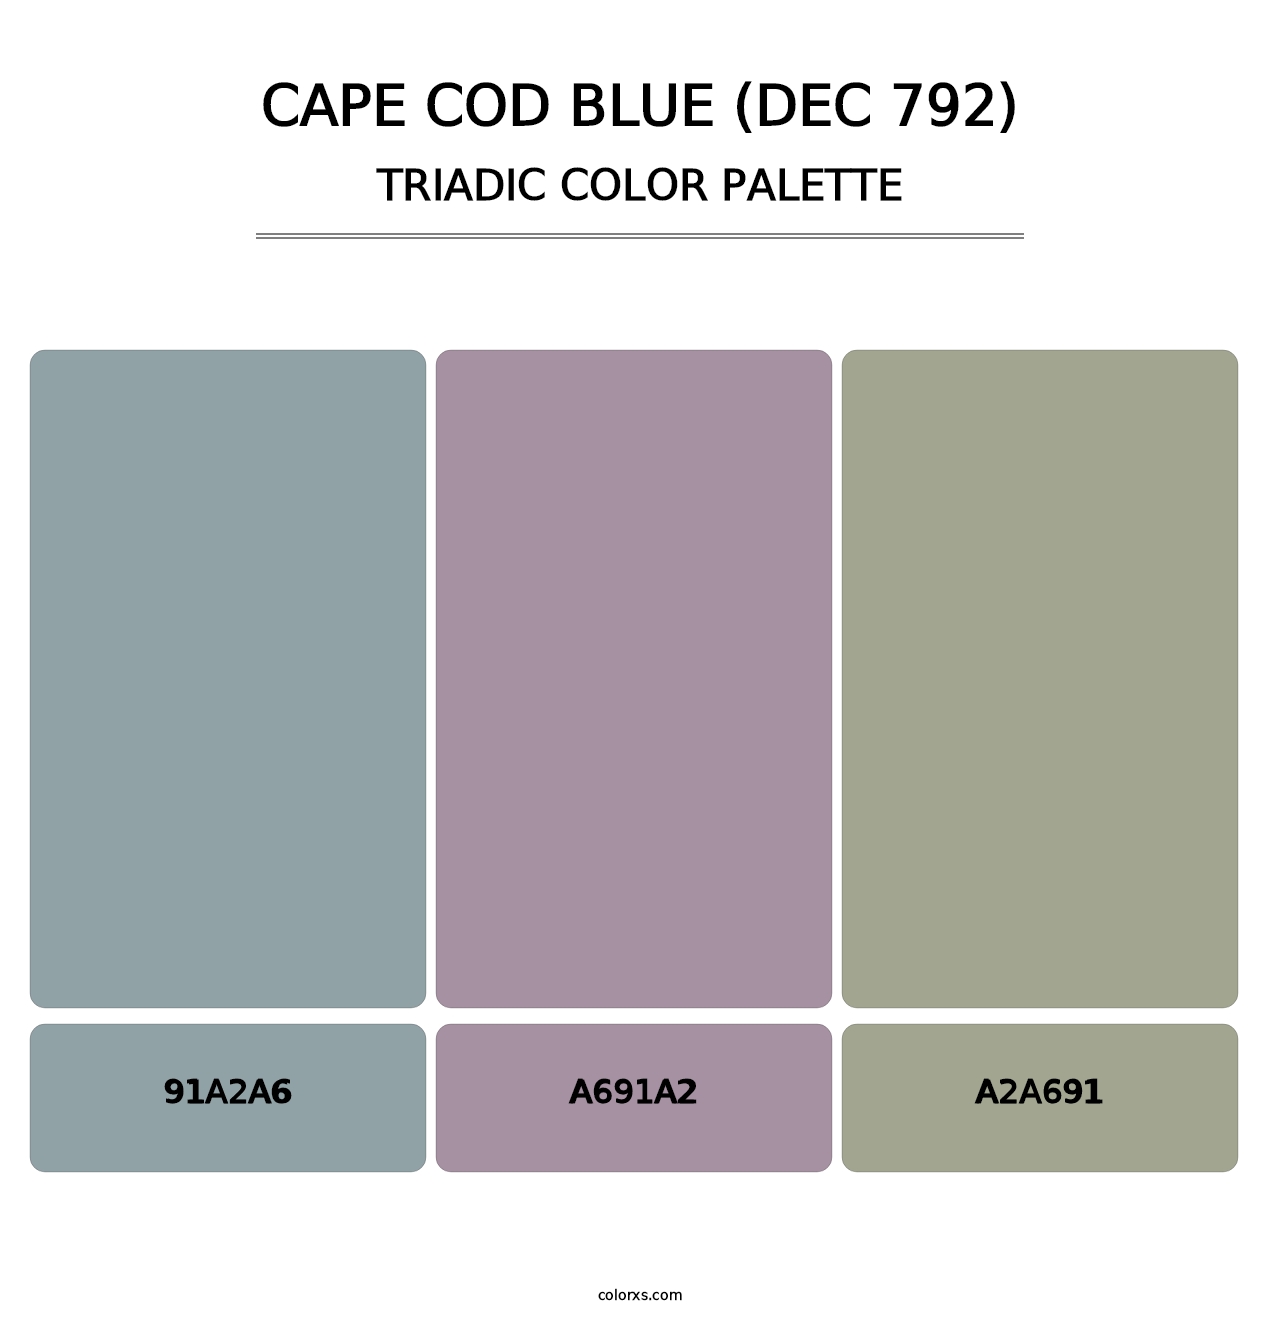 Cape Cod Blue (DEC 792) - Triadic Color Palette